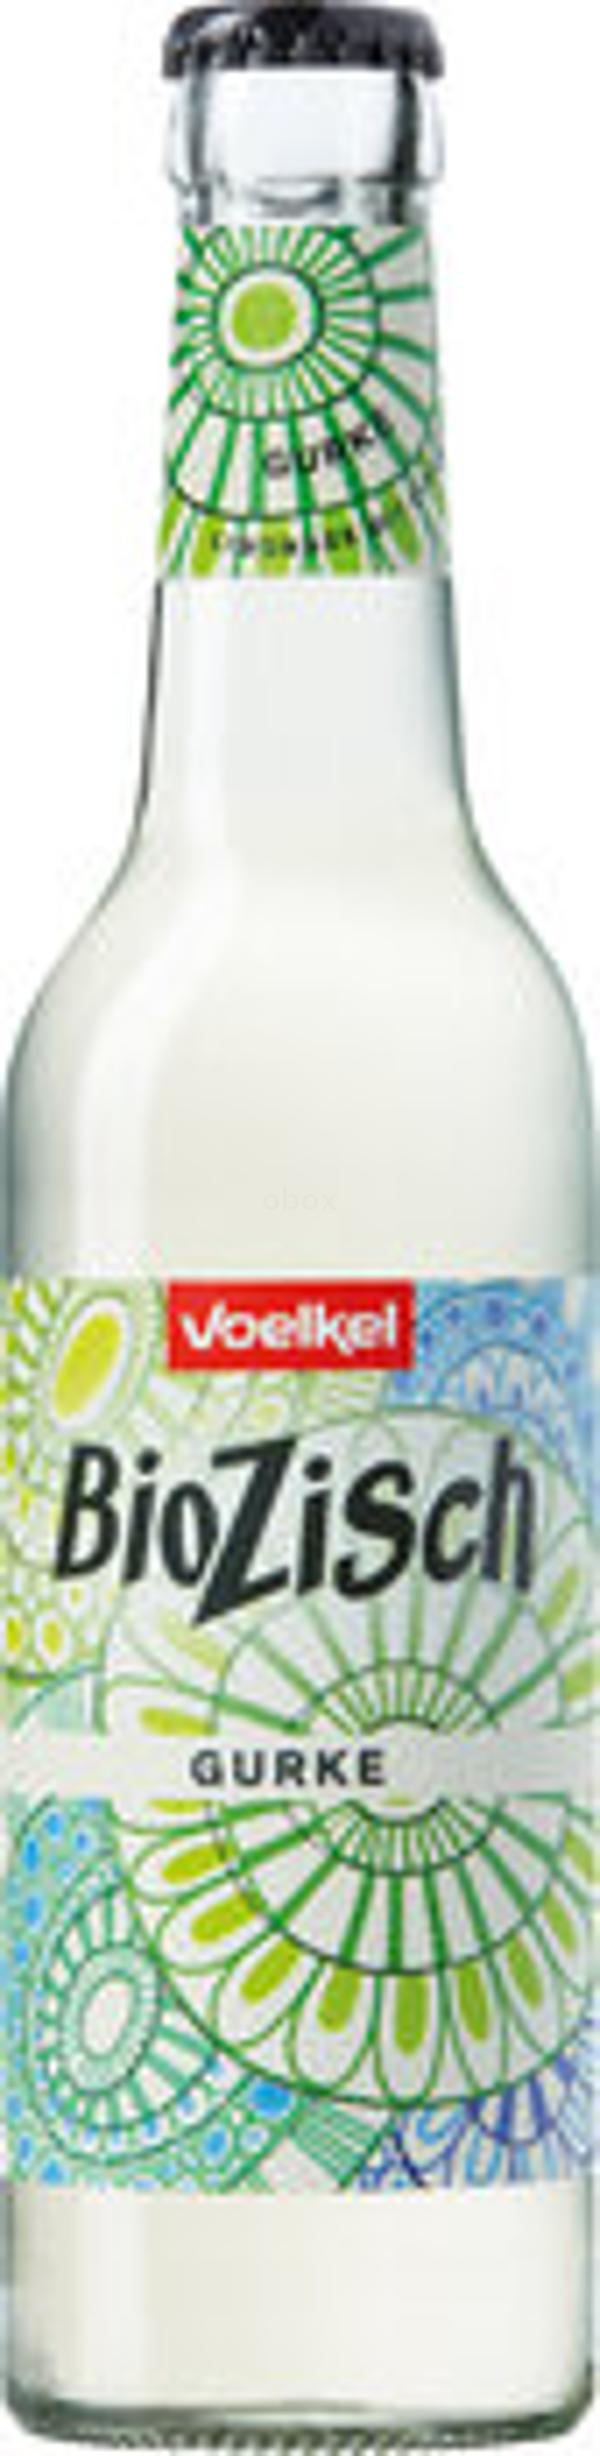 Produktfoto zu BioZisch Gurke,  0,33l